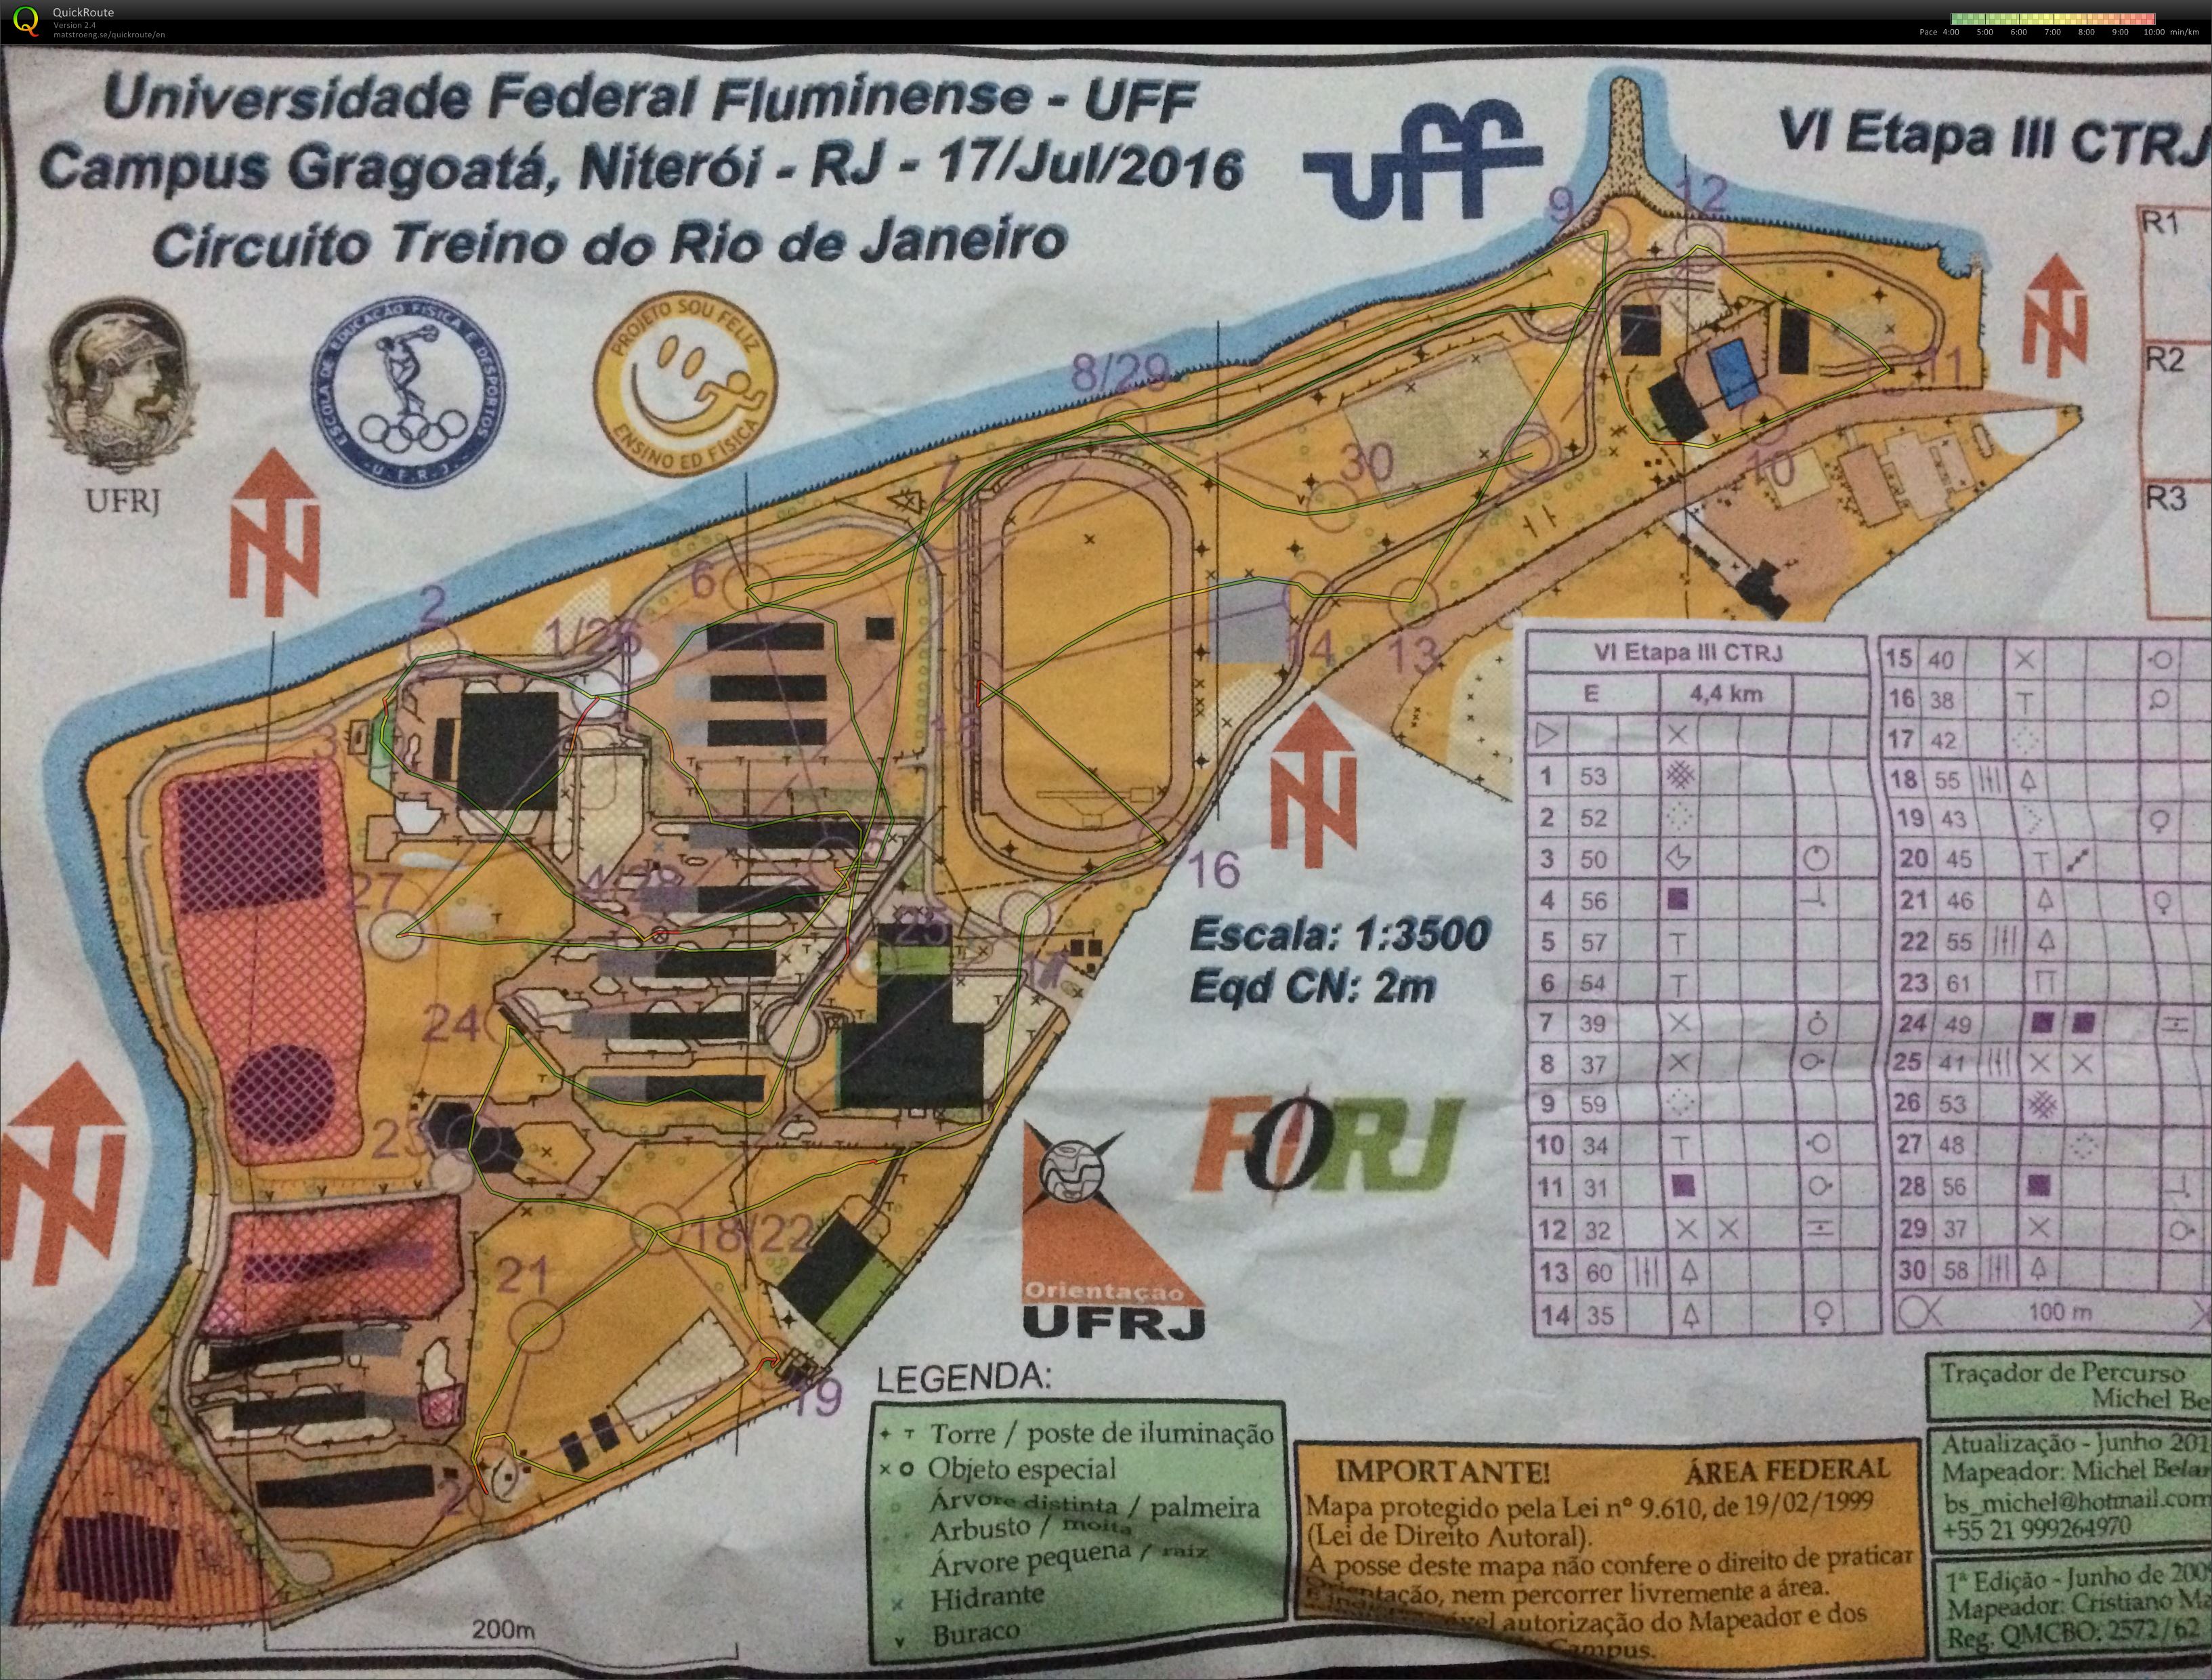 VI Etapa III, Circuito Treino do Rio de Janeiro (17/07/2016)